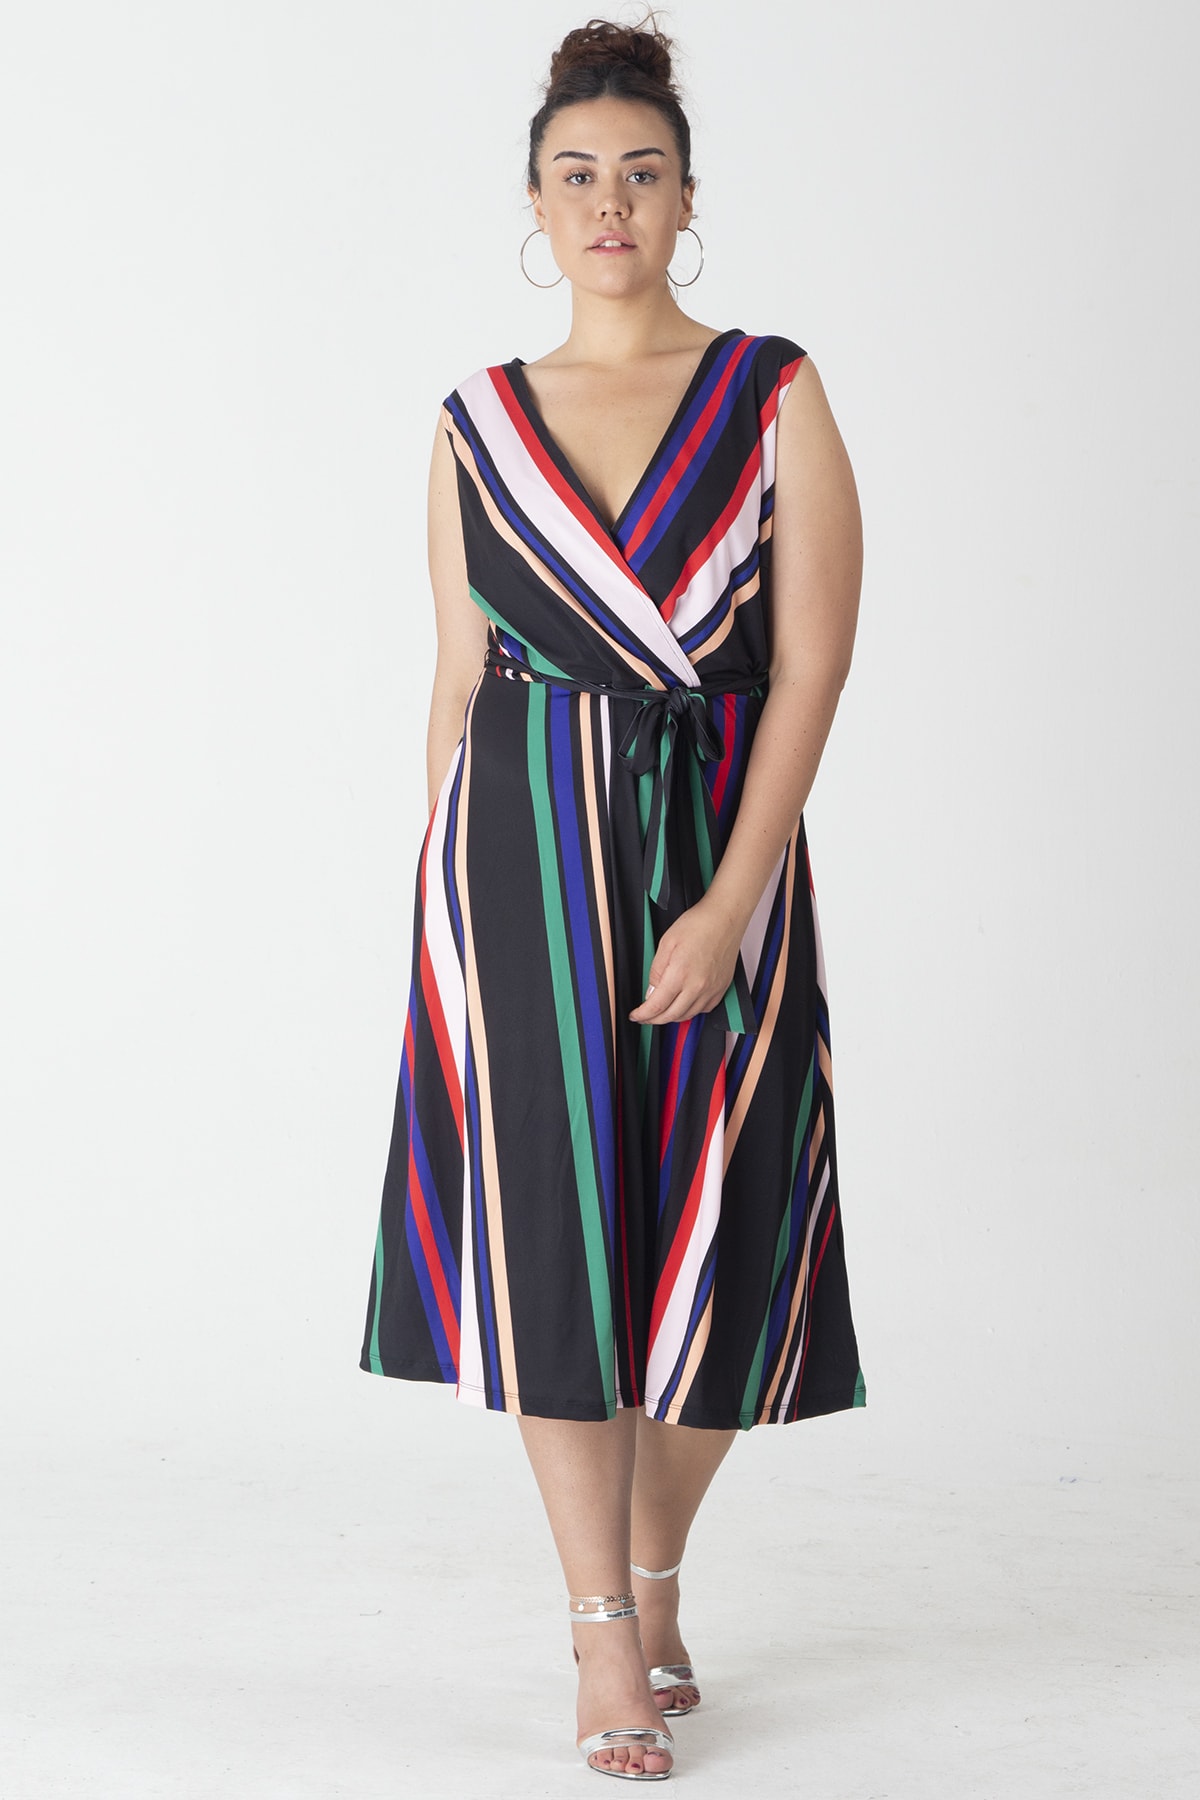 Şans Women's Large Size Patterned Wrap Striped Dress